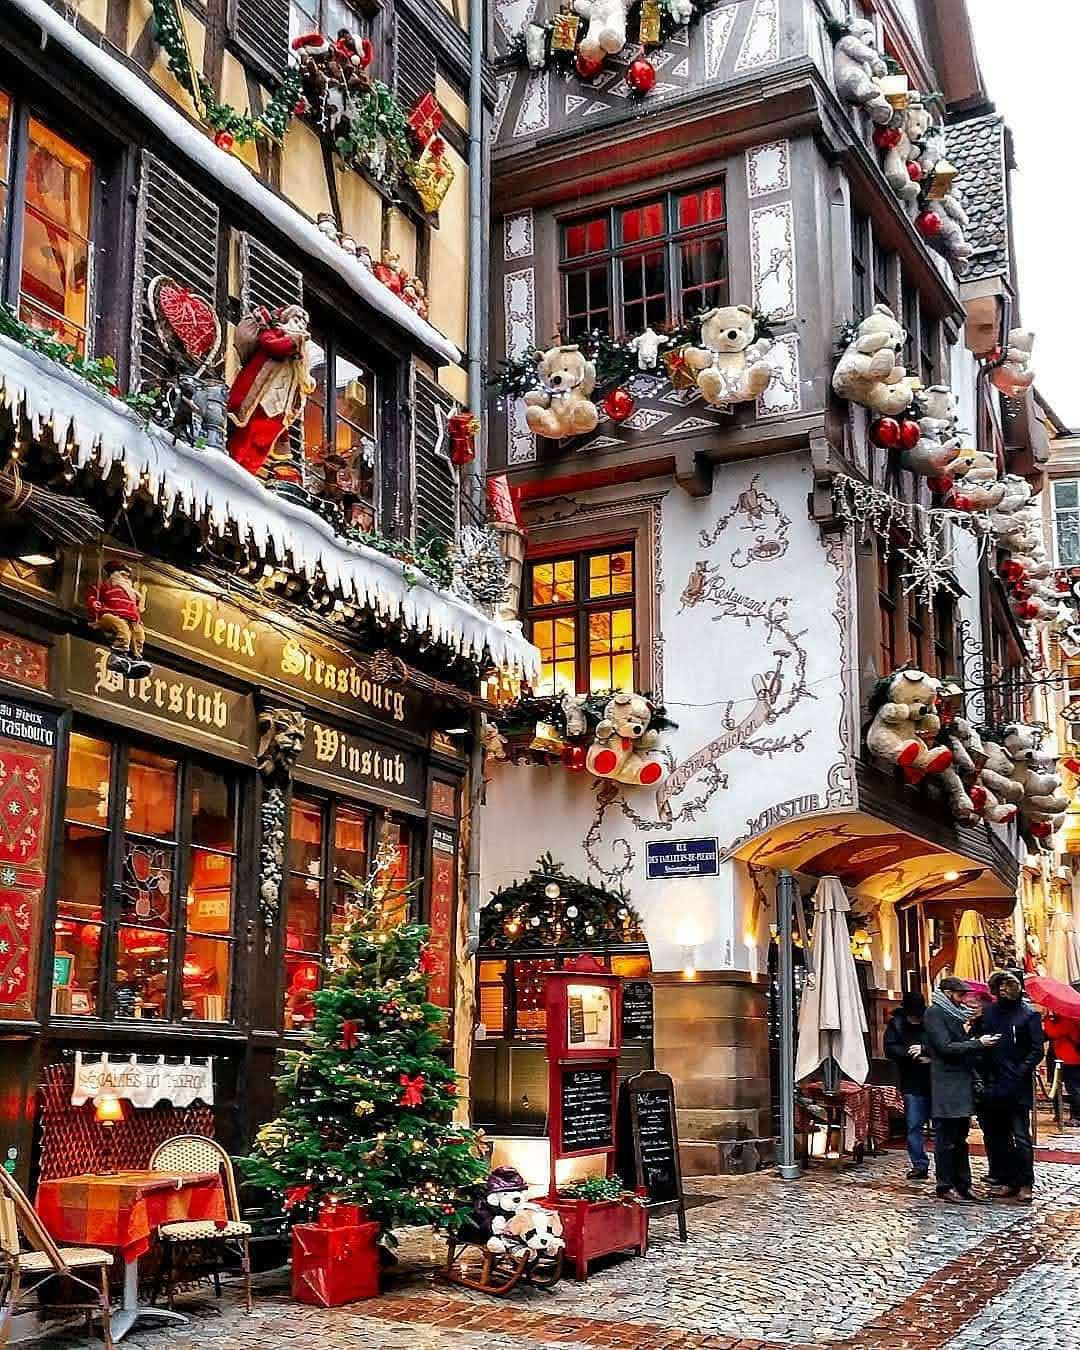 Chợ Giáng Sinh châu Âu đang đón chào bạn với những tràng giang sinh rực rỡ, hãy đến đó để tận hưởng không khí noel đầy ấm áp.